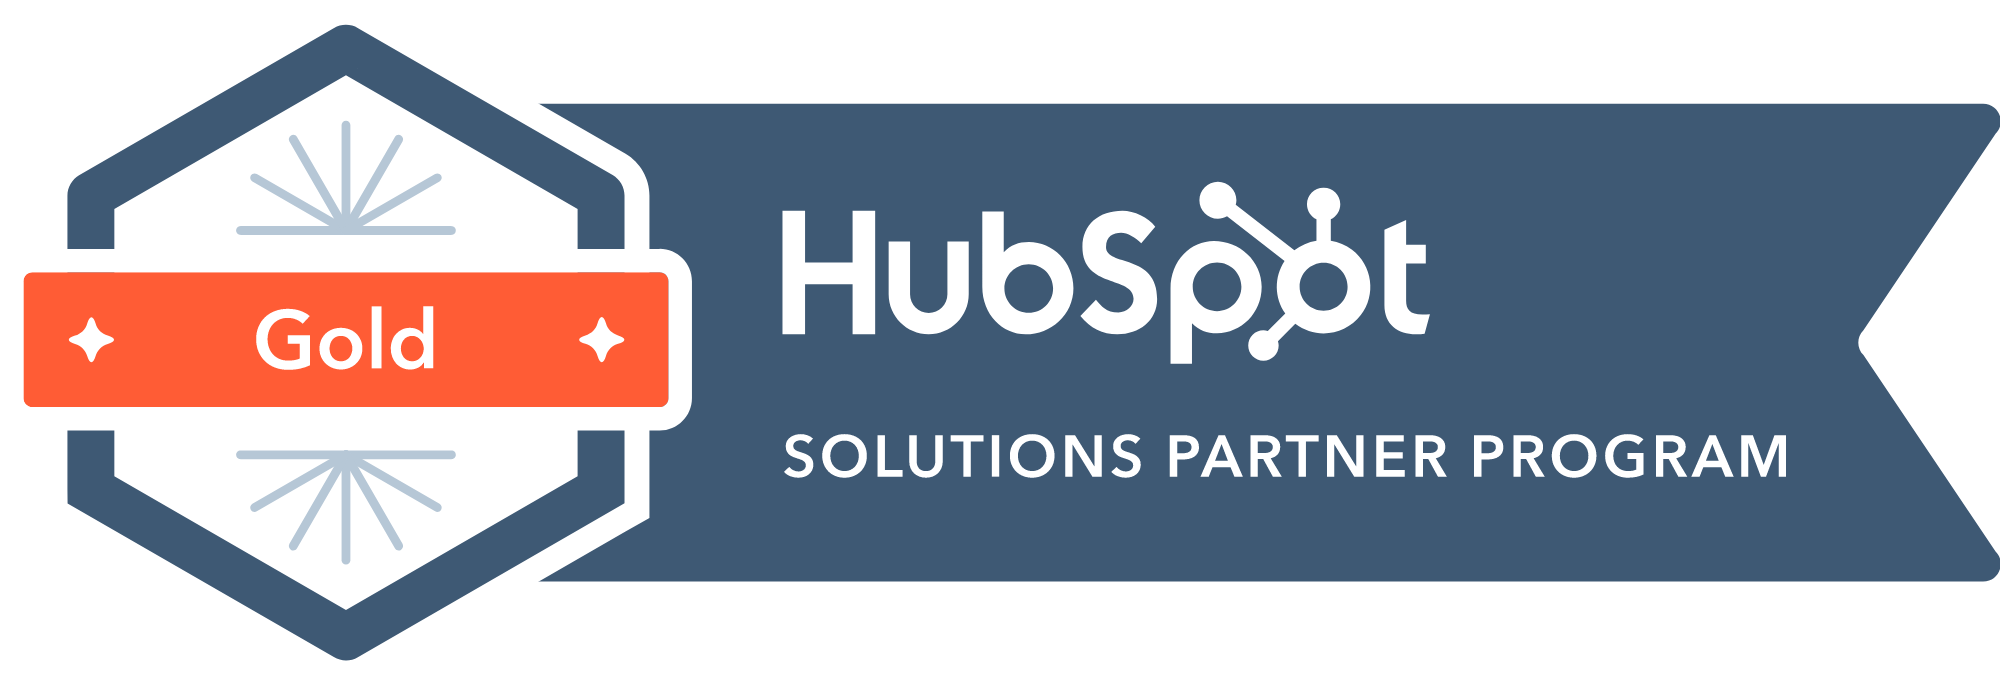 HubSpot Agentur viminds: Wir sind zertifizierter HubSpot Solutions Partner mit Gold-Status